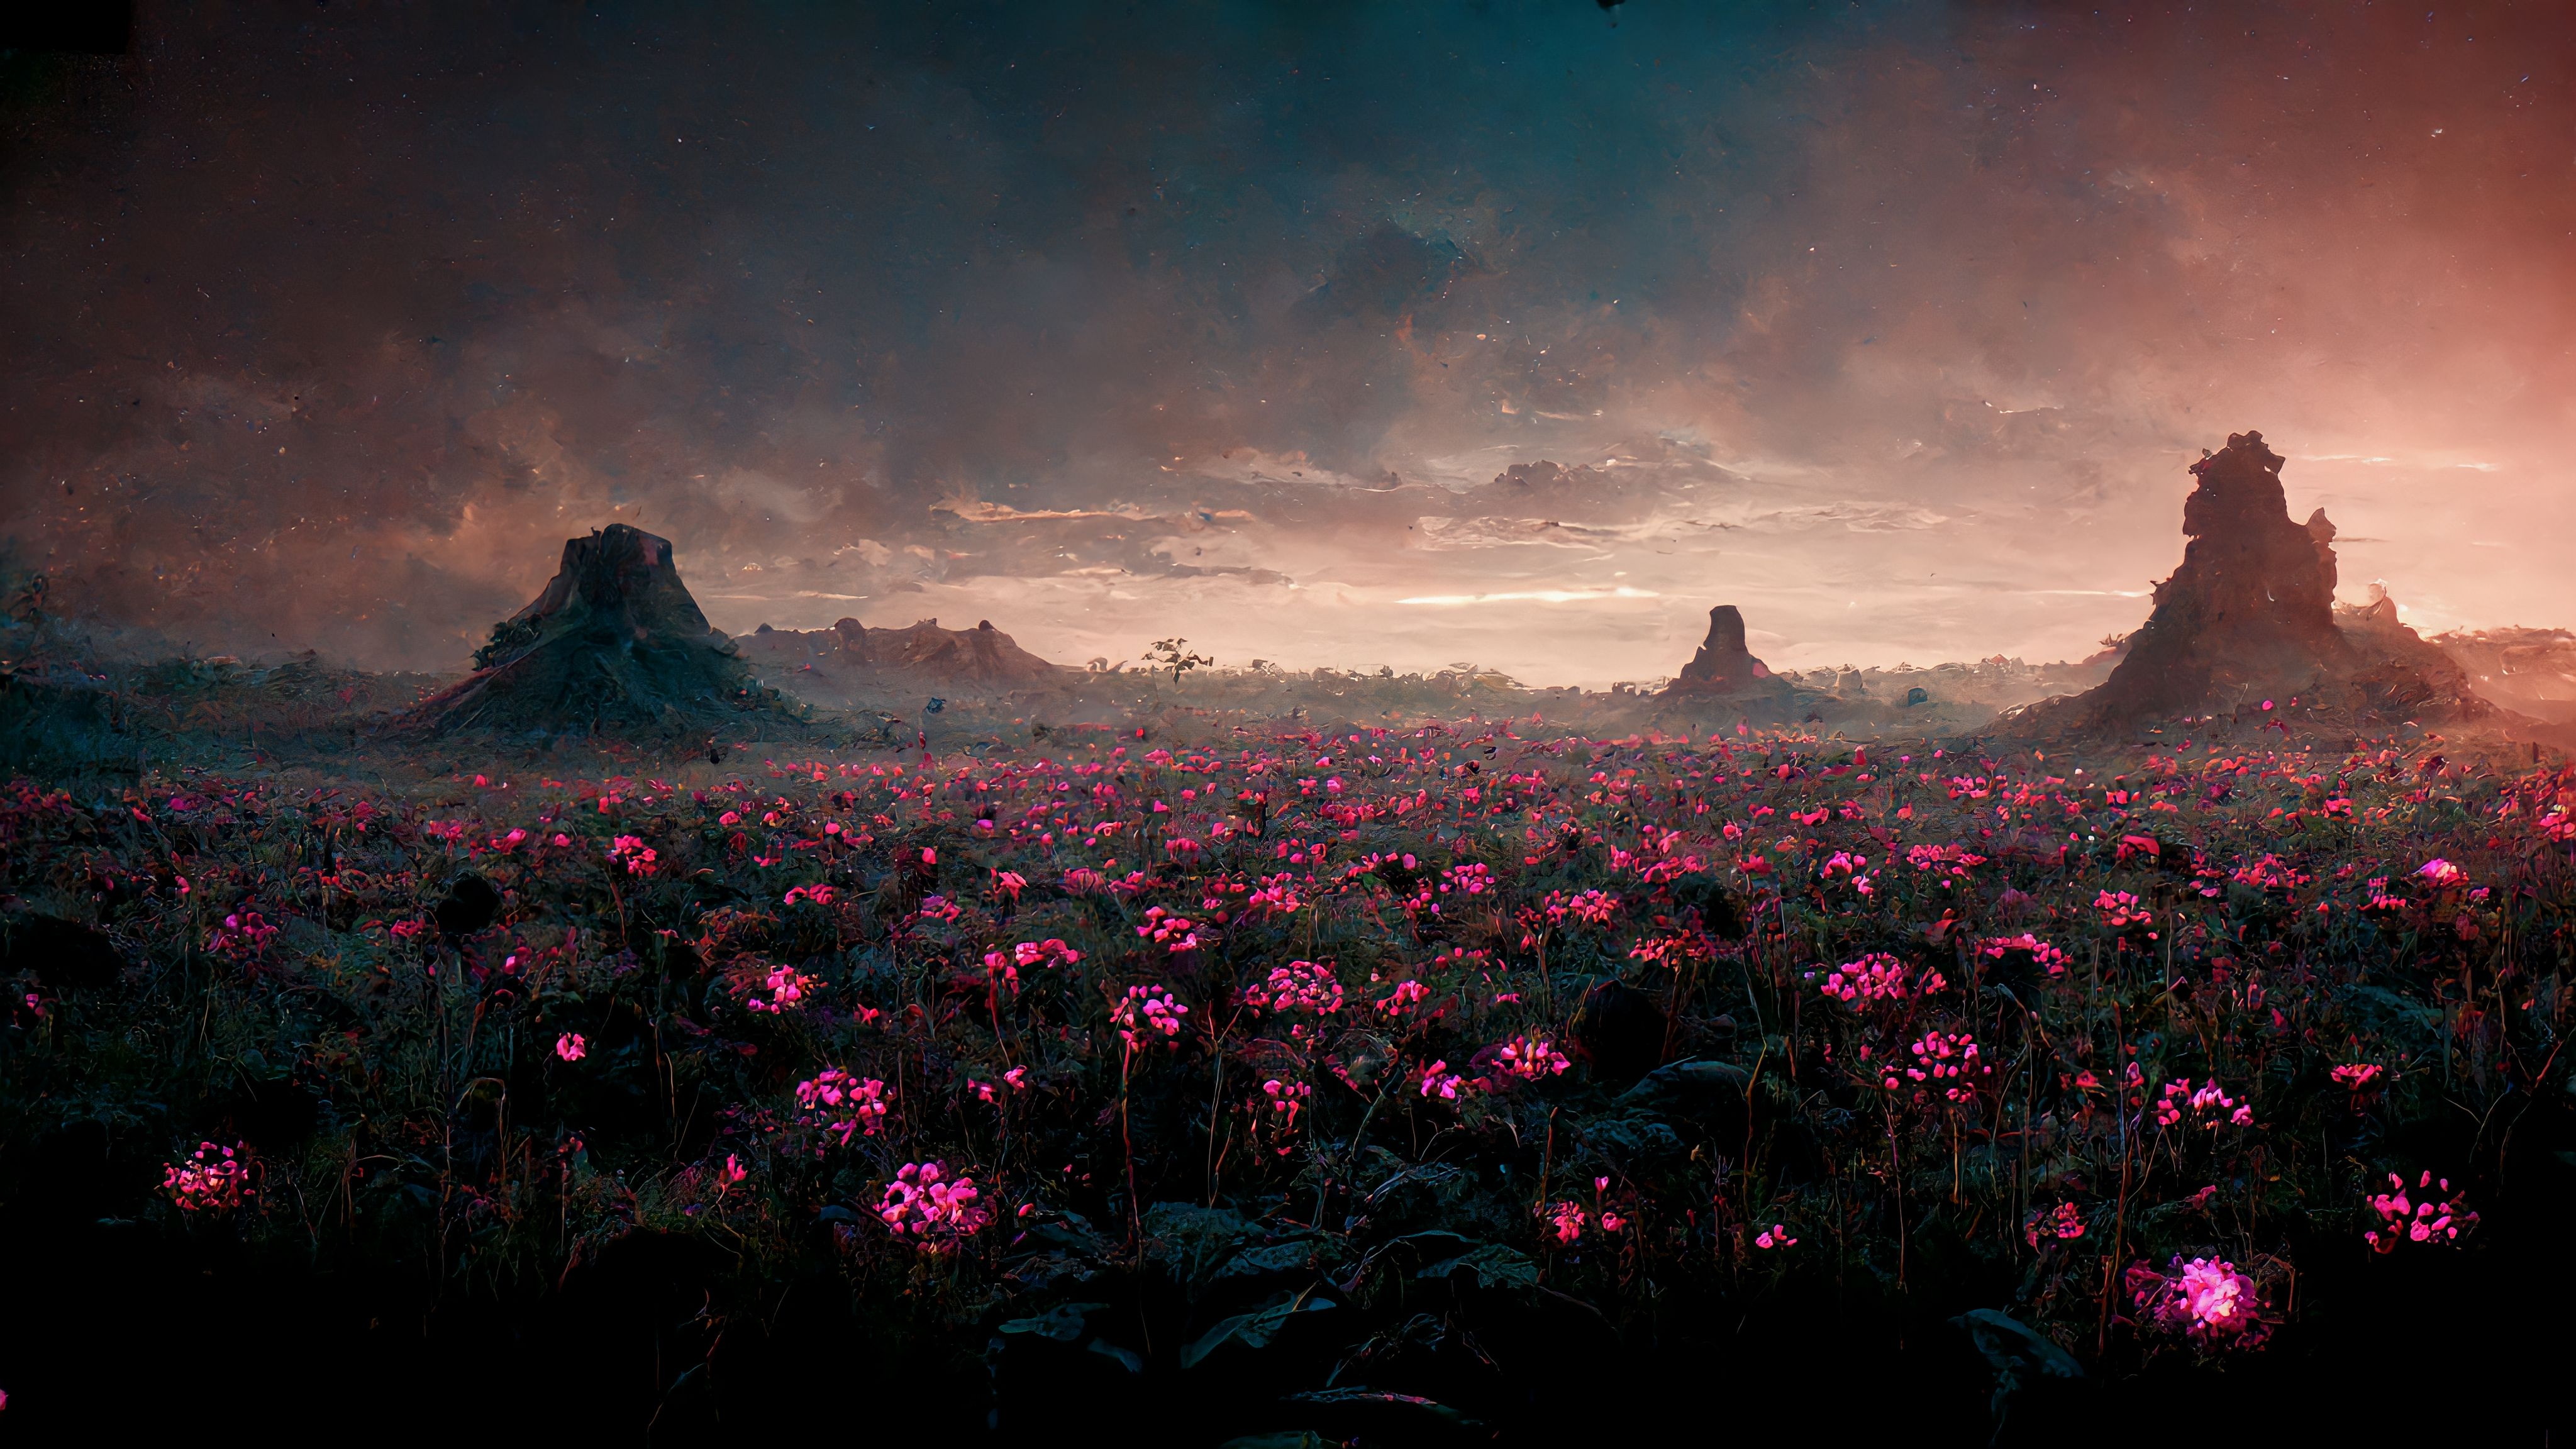 General 4096x2304 pink flowers landscape mountains clouds plants nature dusk flowers AI art